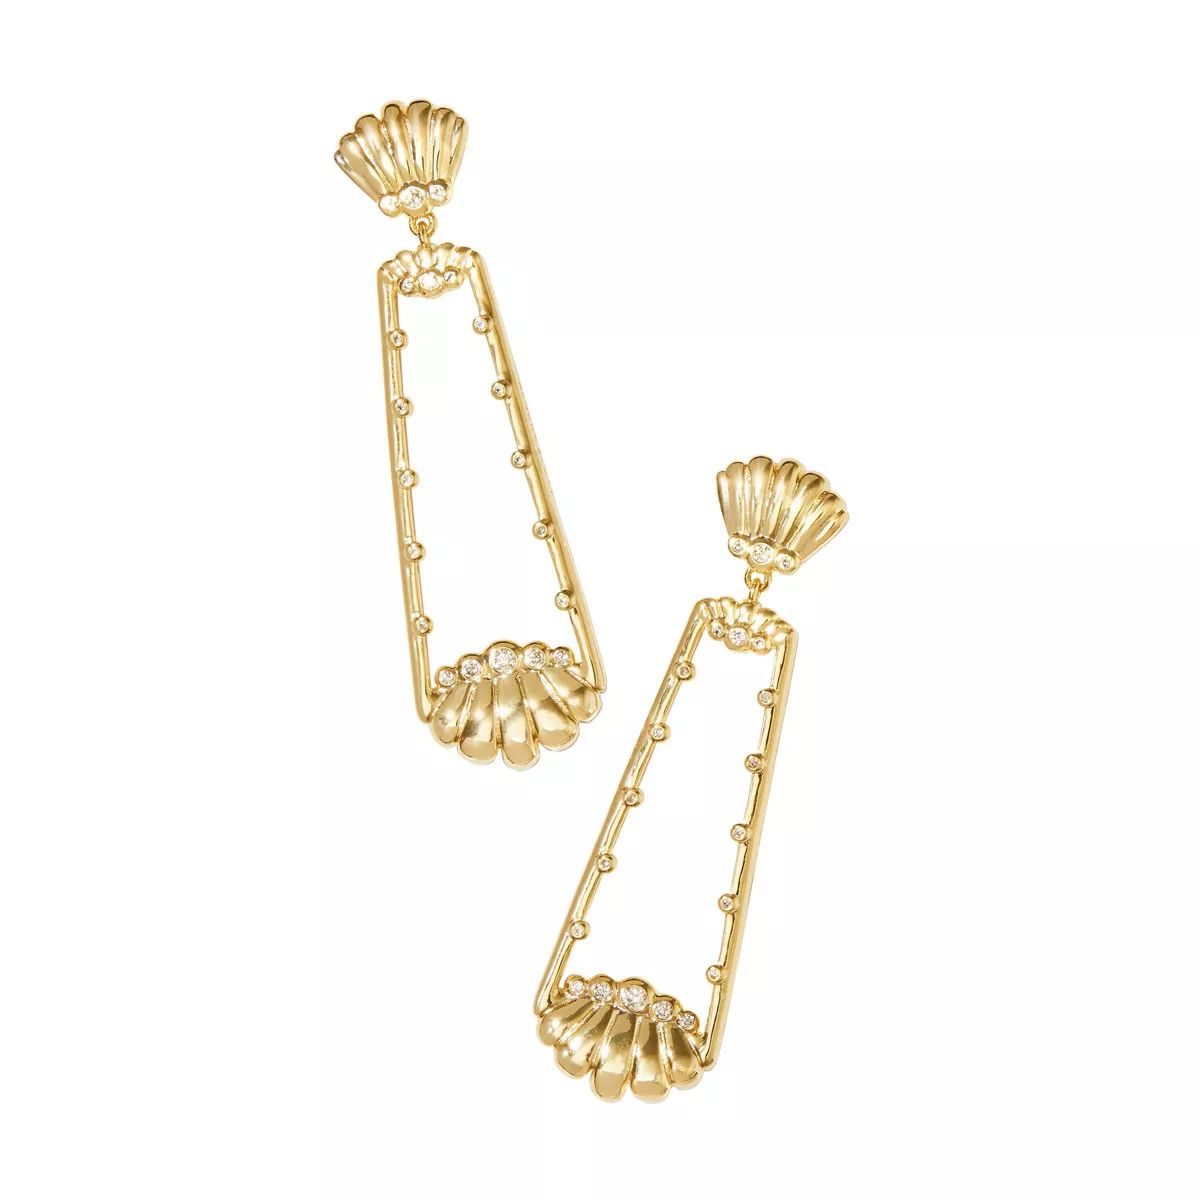 Kendra Scott Isla Statement Earrings - Gold | Target